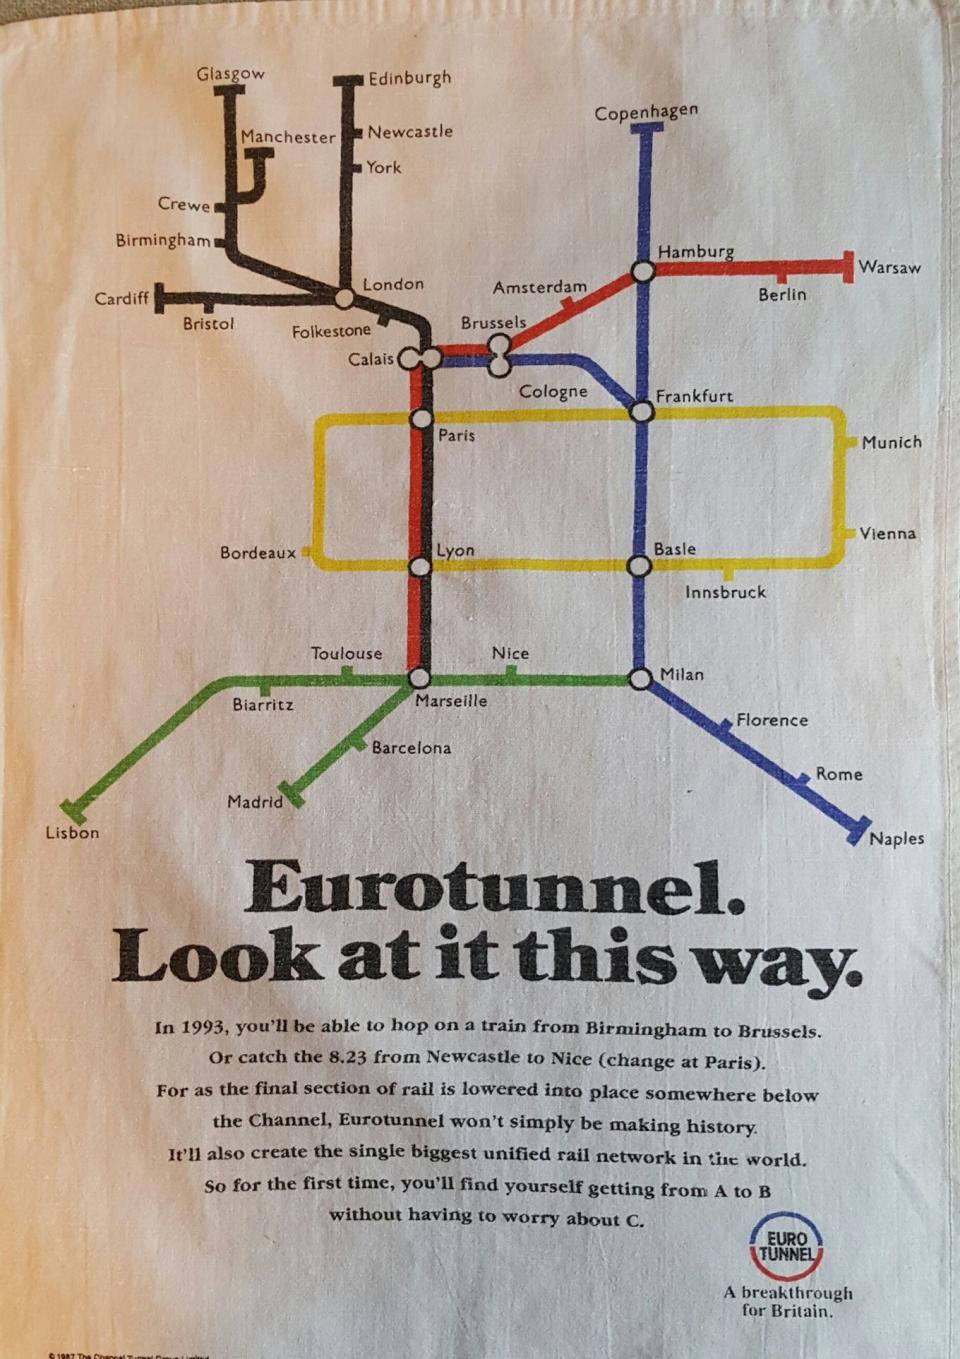 The 1987 Eurotunnel advert, printed on a teatowel